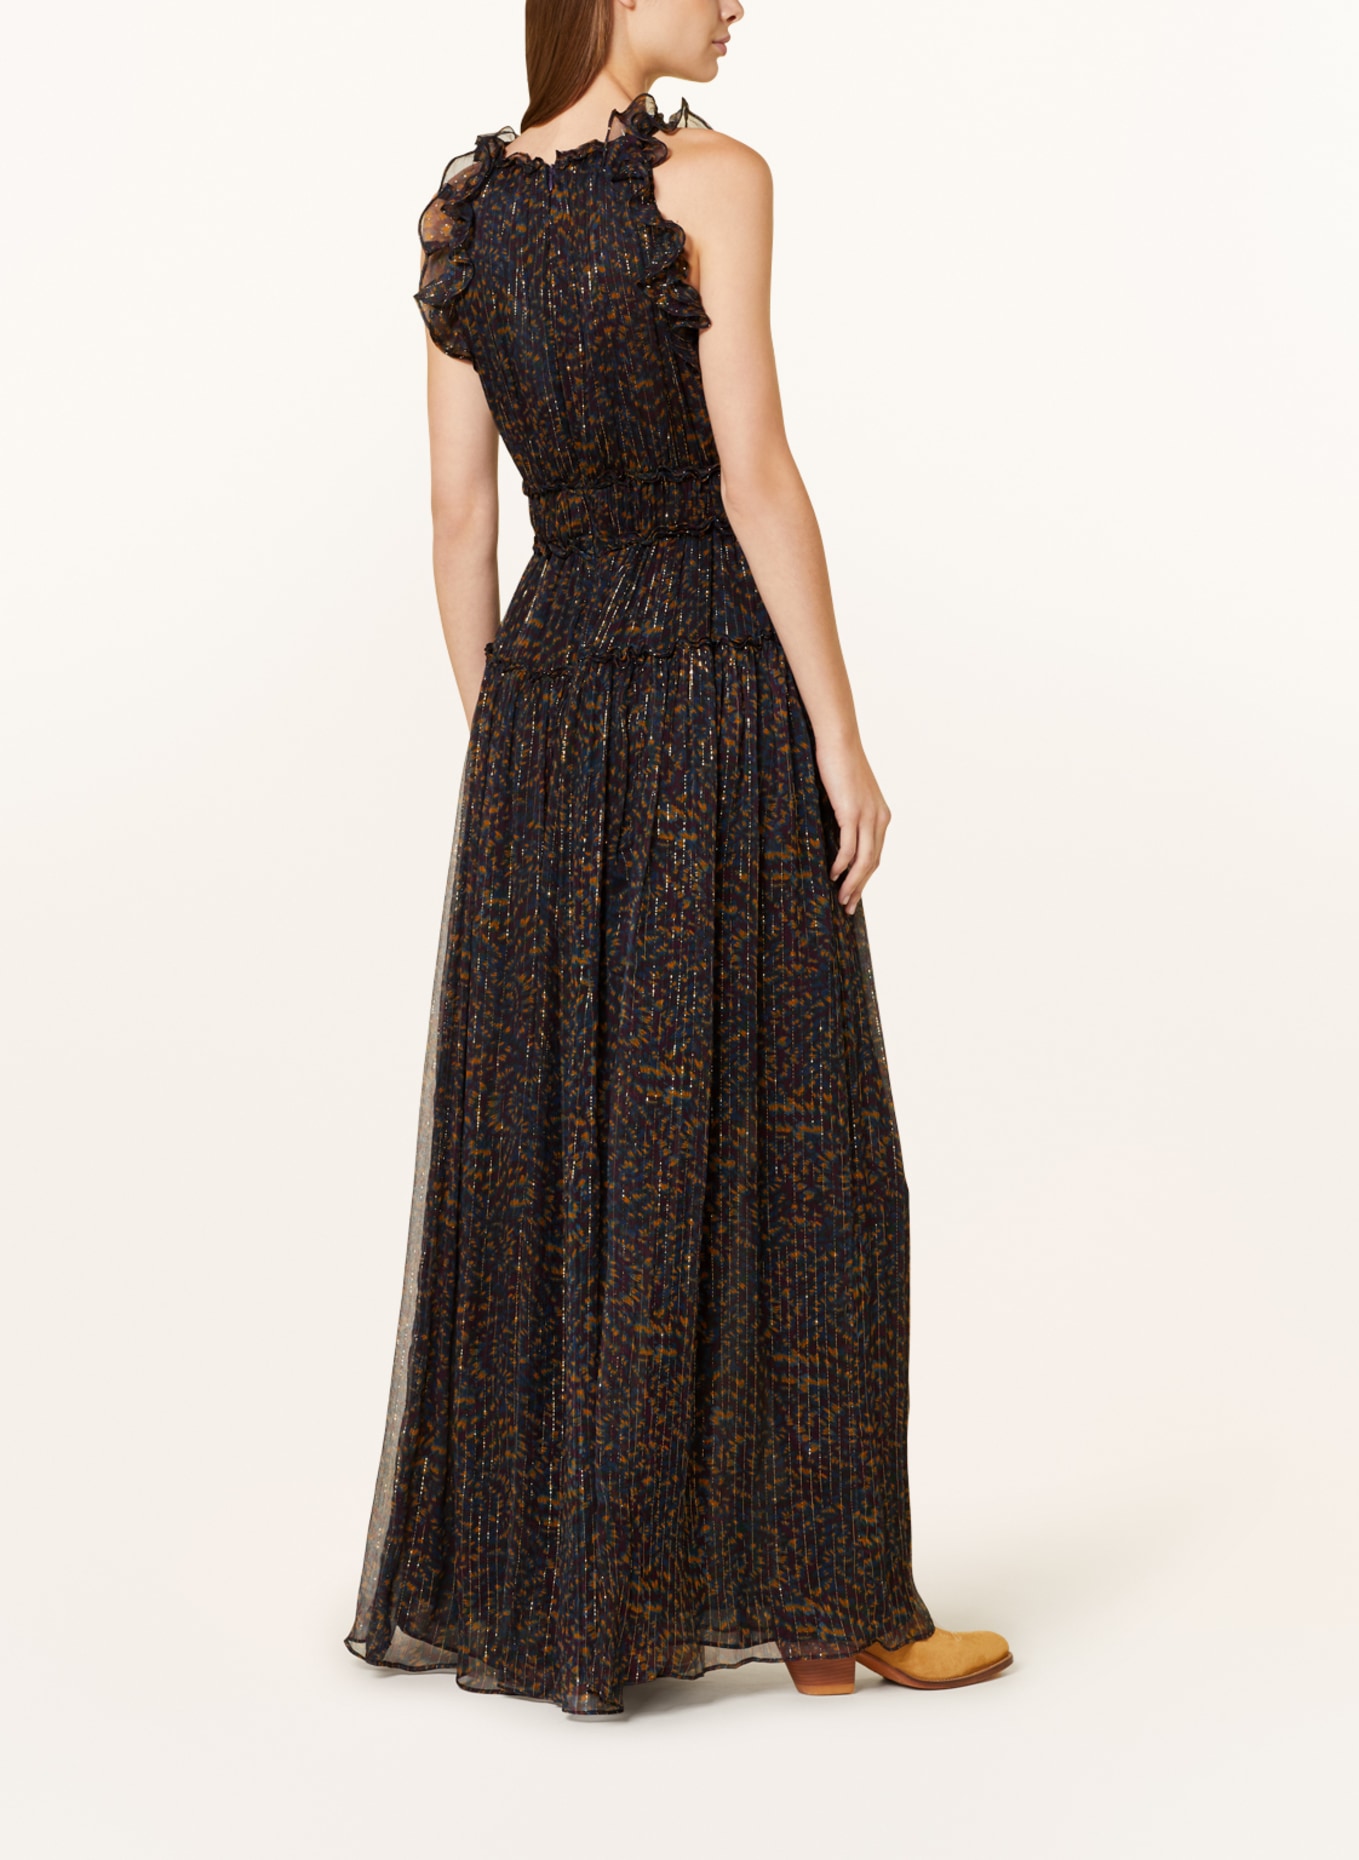 ULLA JOHNSON Kleid LIRRA mit Glitzergarn und Rüschen, Farbe: SCHWARZ/ DUNKELBLAU/ DUNKELORANGE (Bild 3)